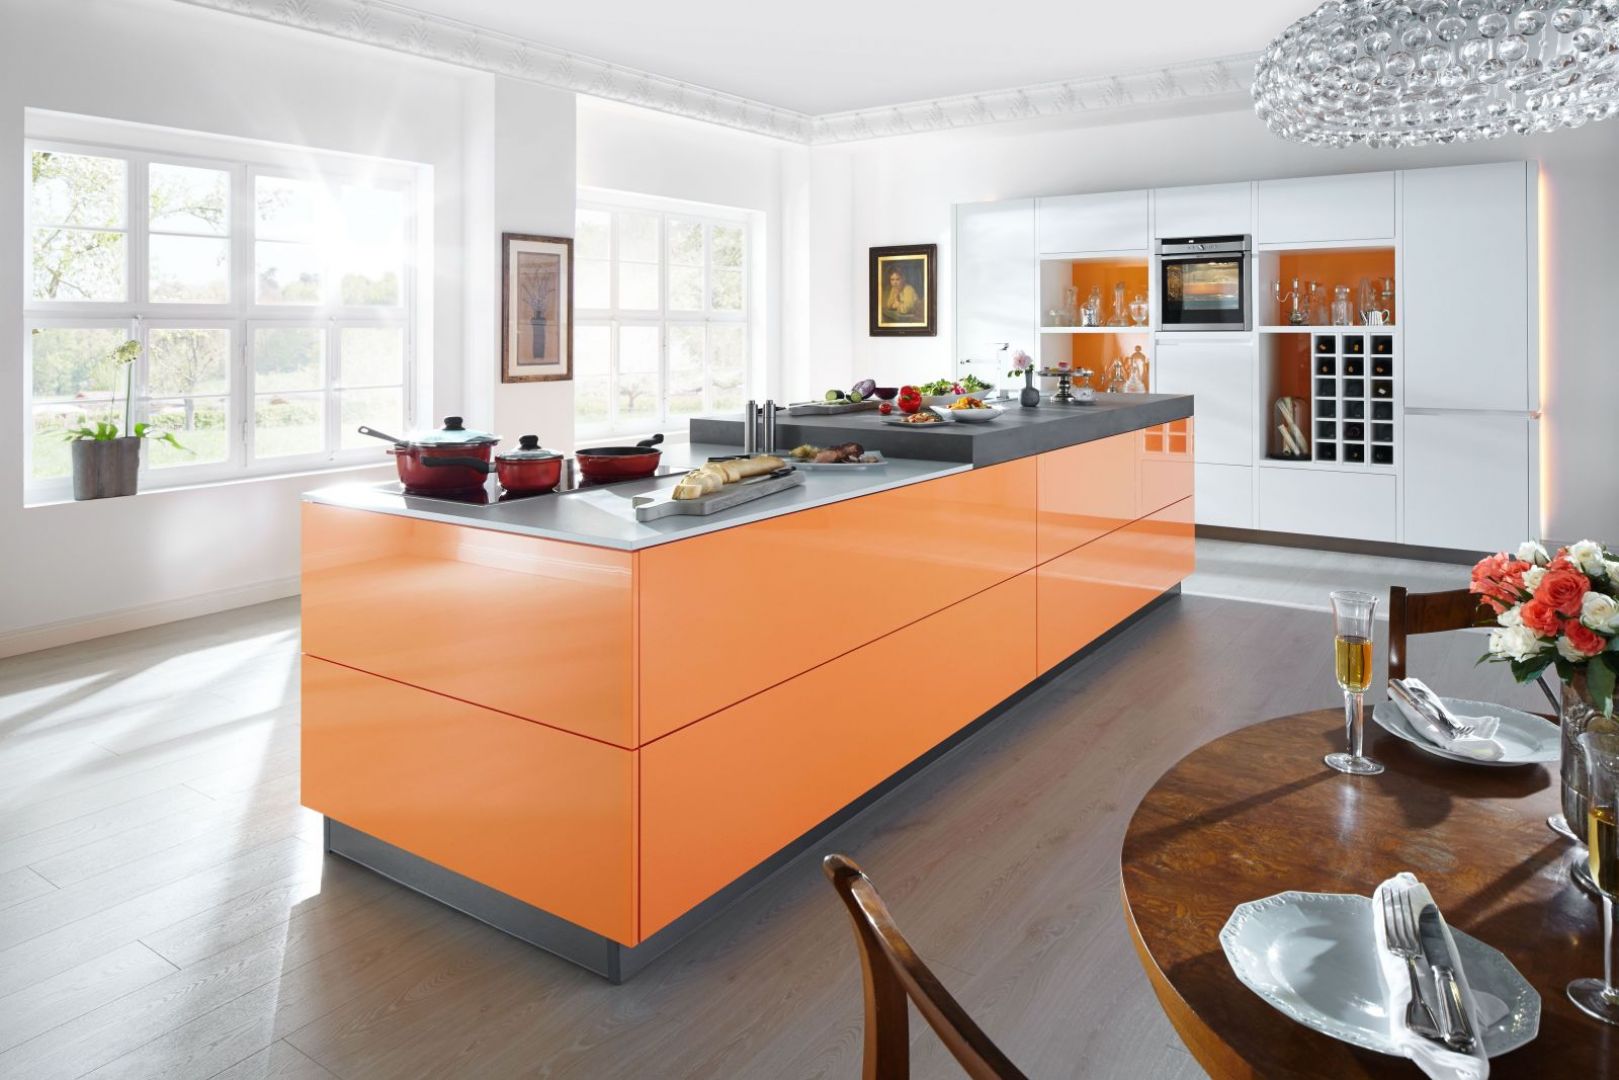 Wyspa kuchenna w żywym kolorze wprowadza radosny nastrój do wnętrza. Fot. Home Concept